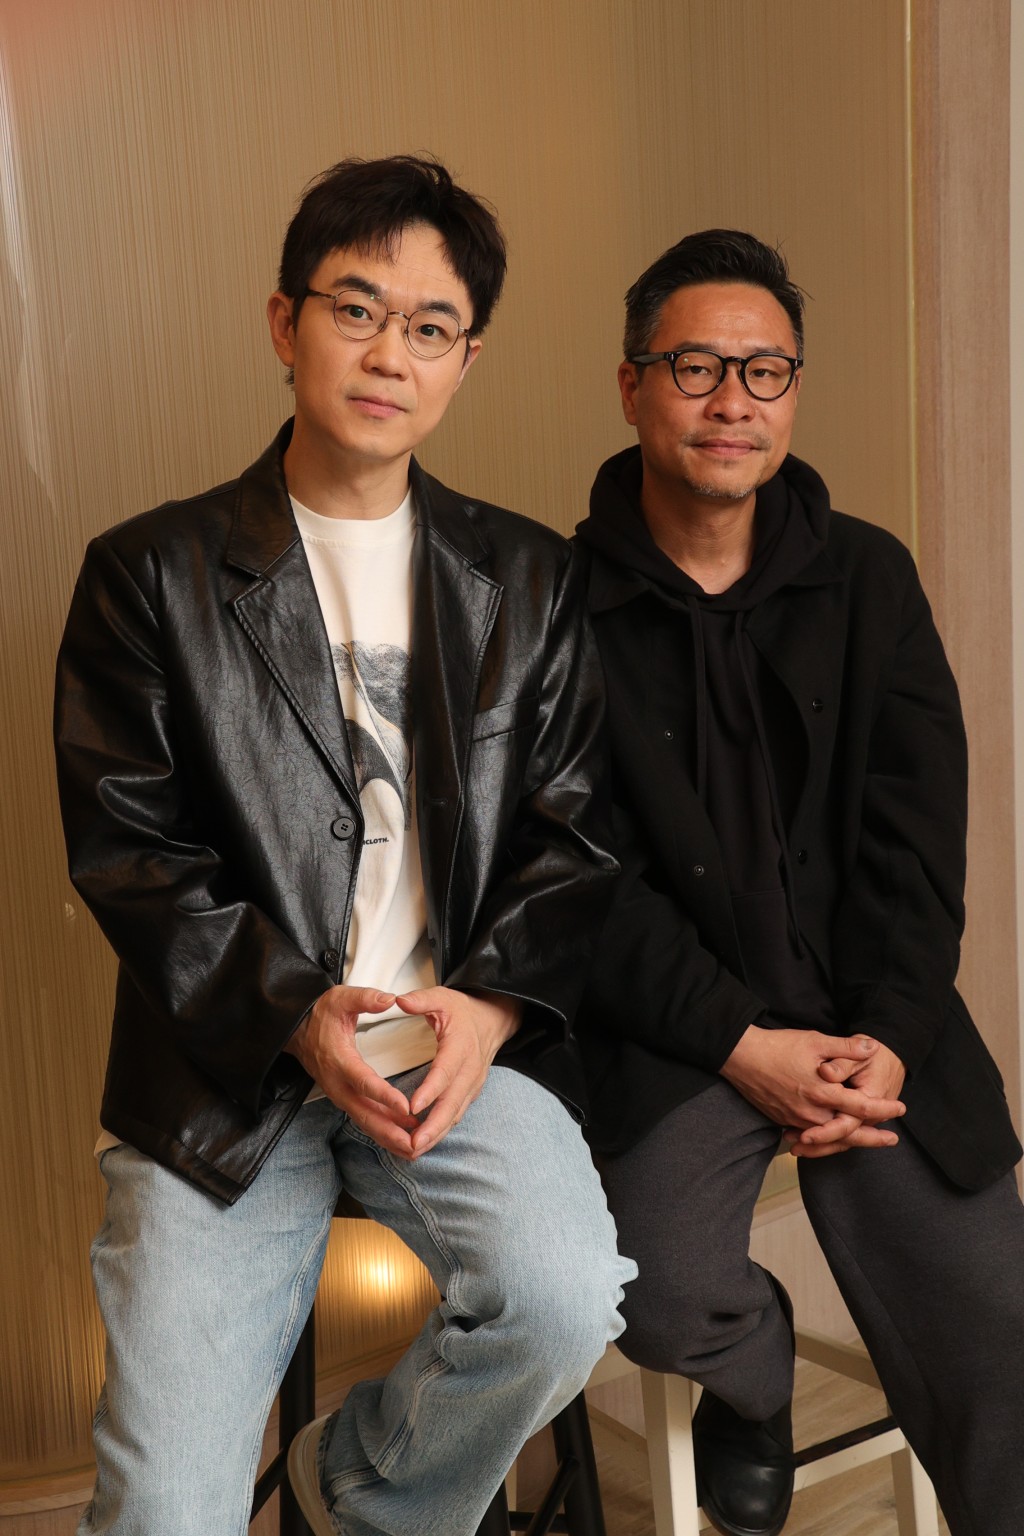 大鵬和導演李子俊對拍完電影都大感不捨。